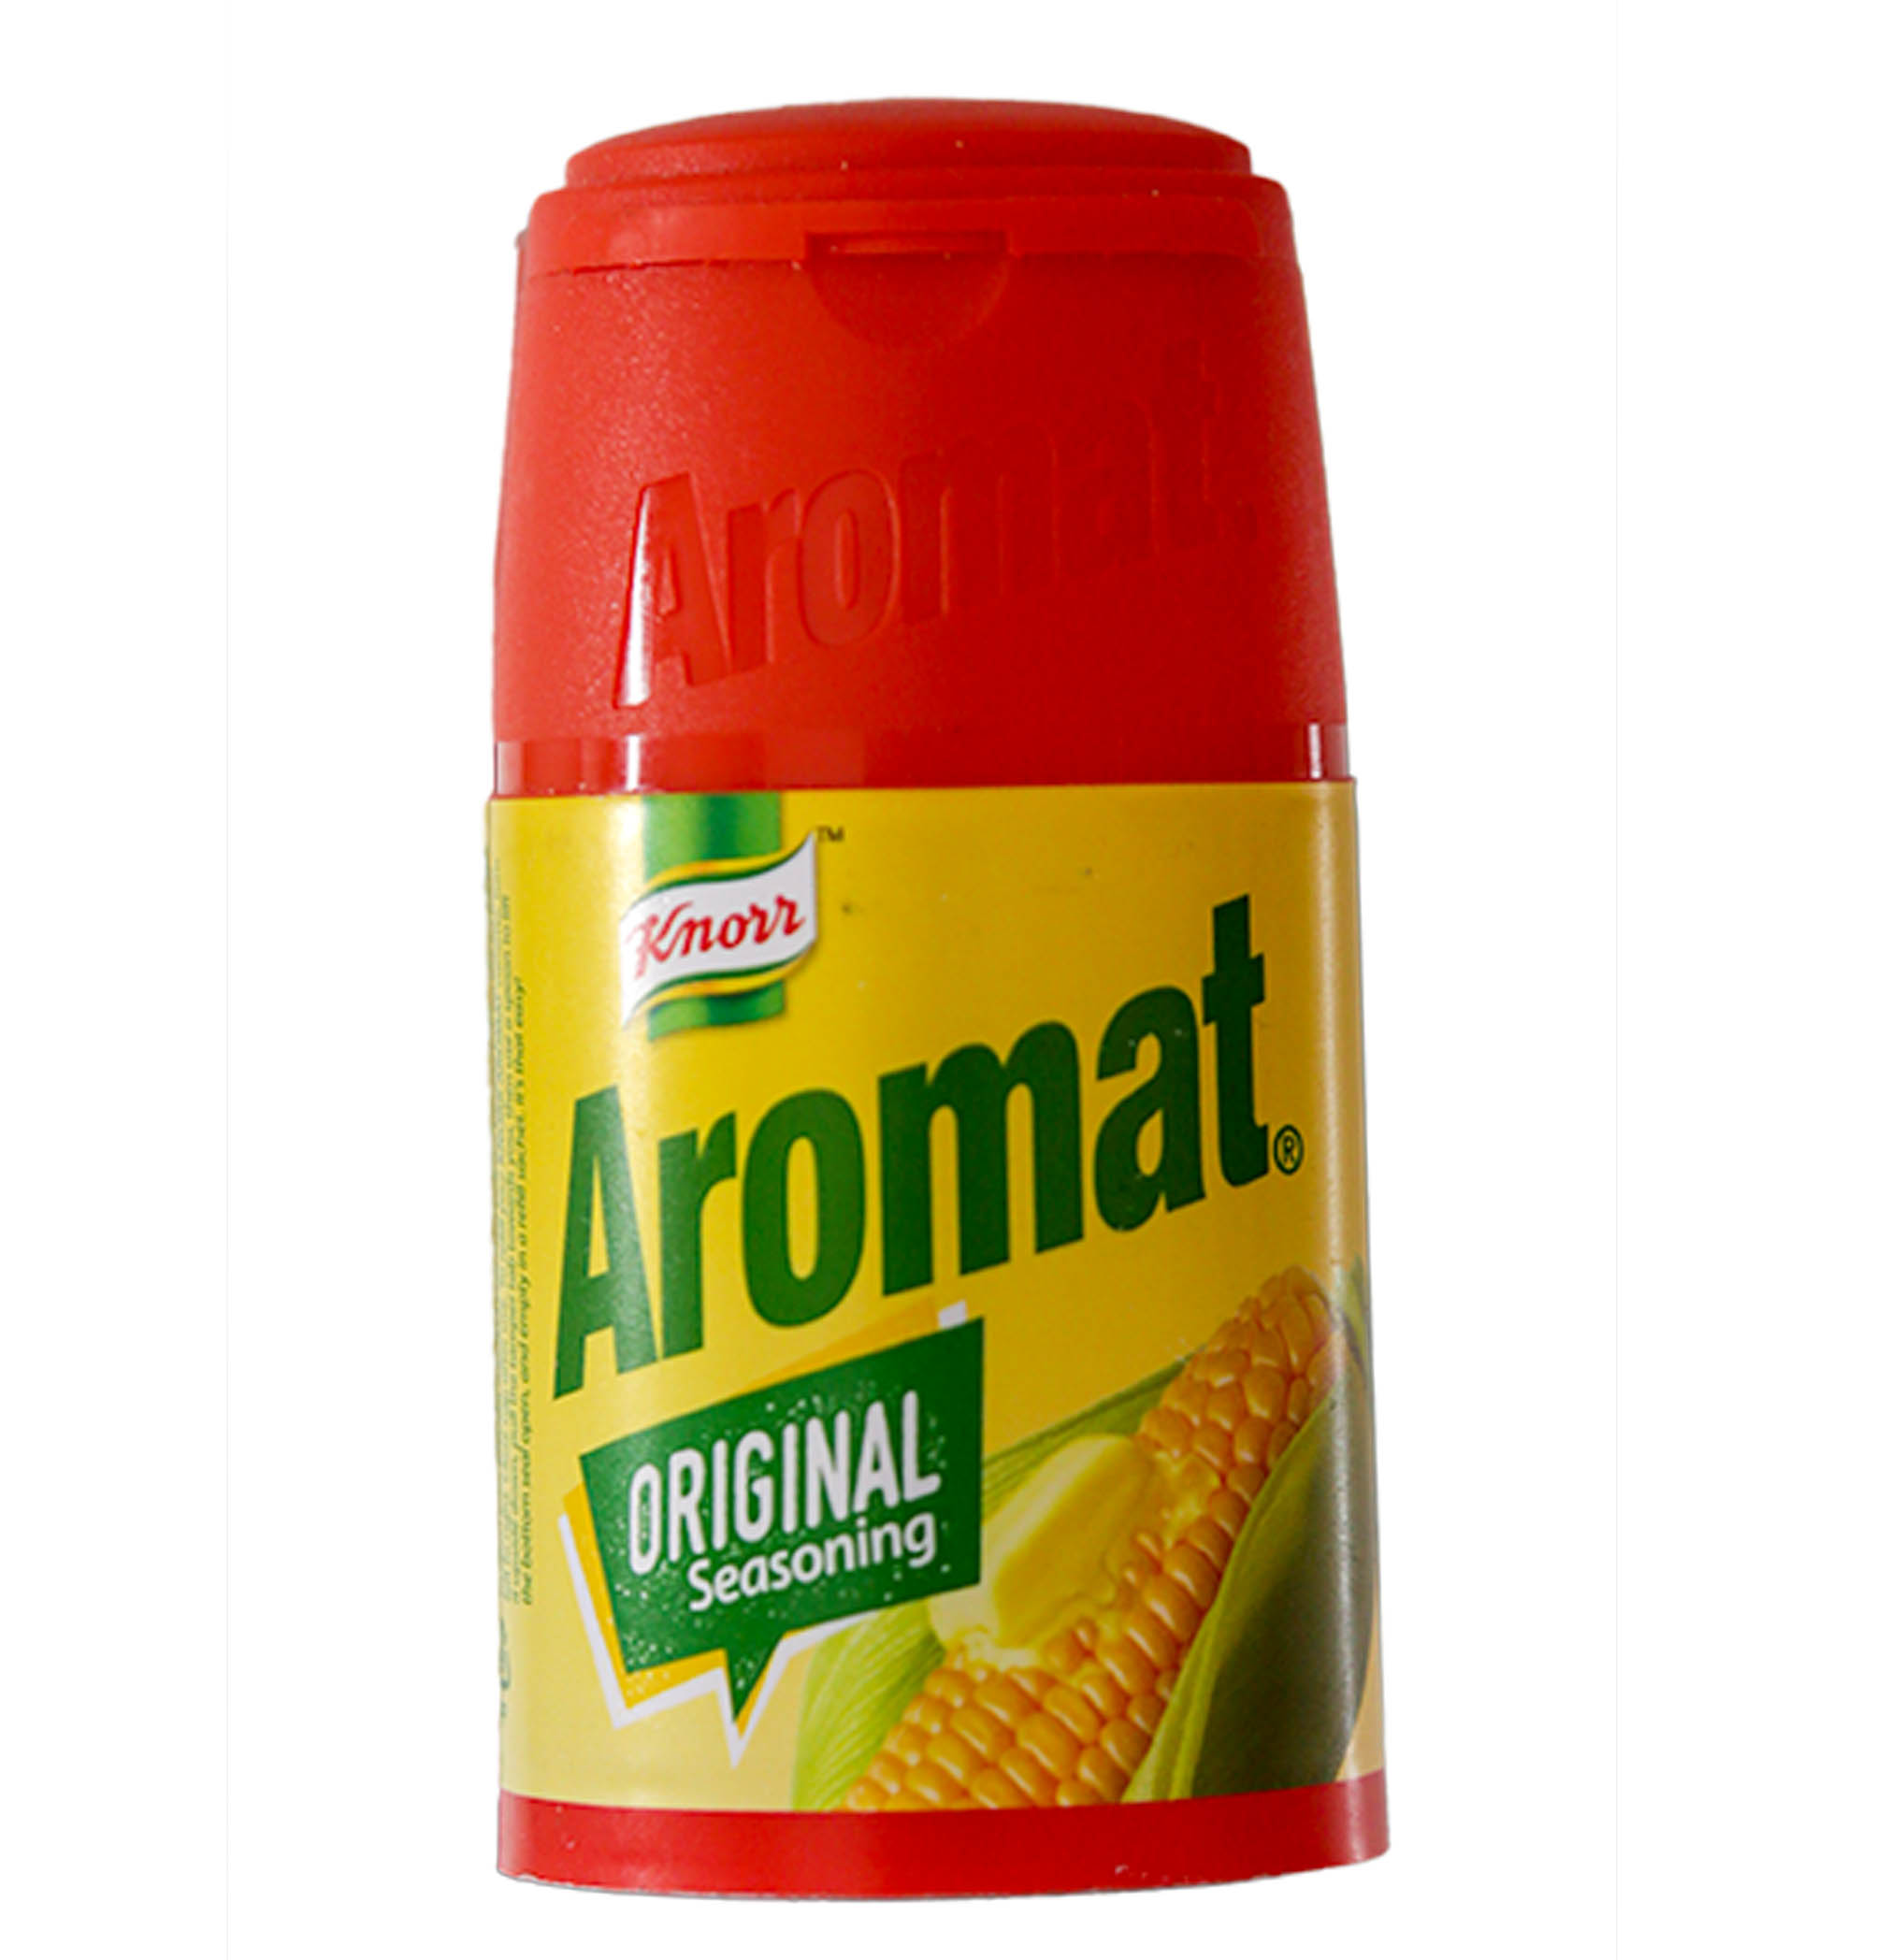 Knorr aromat Original seasoning 75g